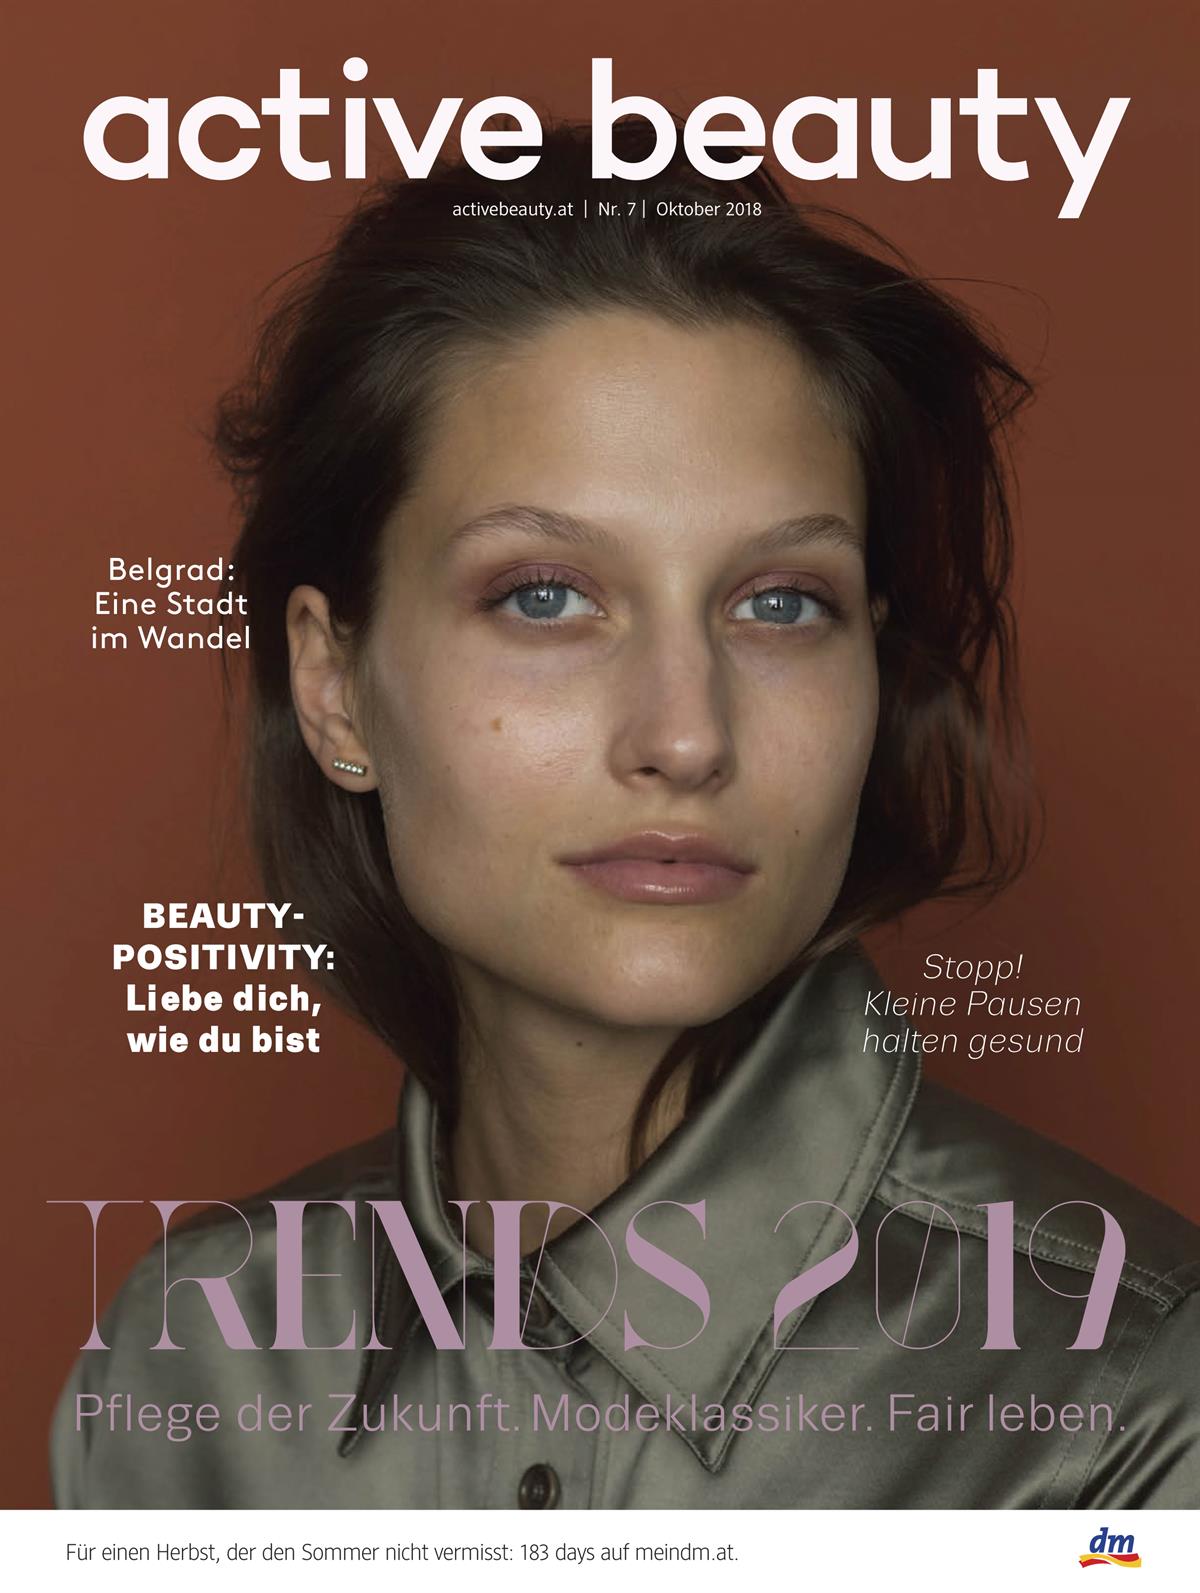 Das active beauty Magazin ist weiter auf Erfolgskurs.